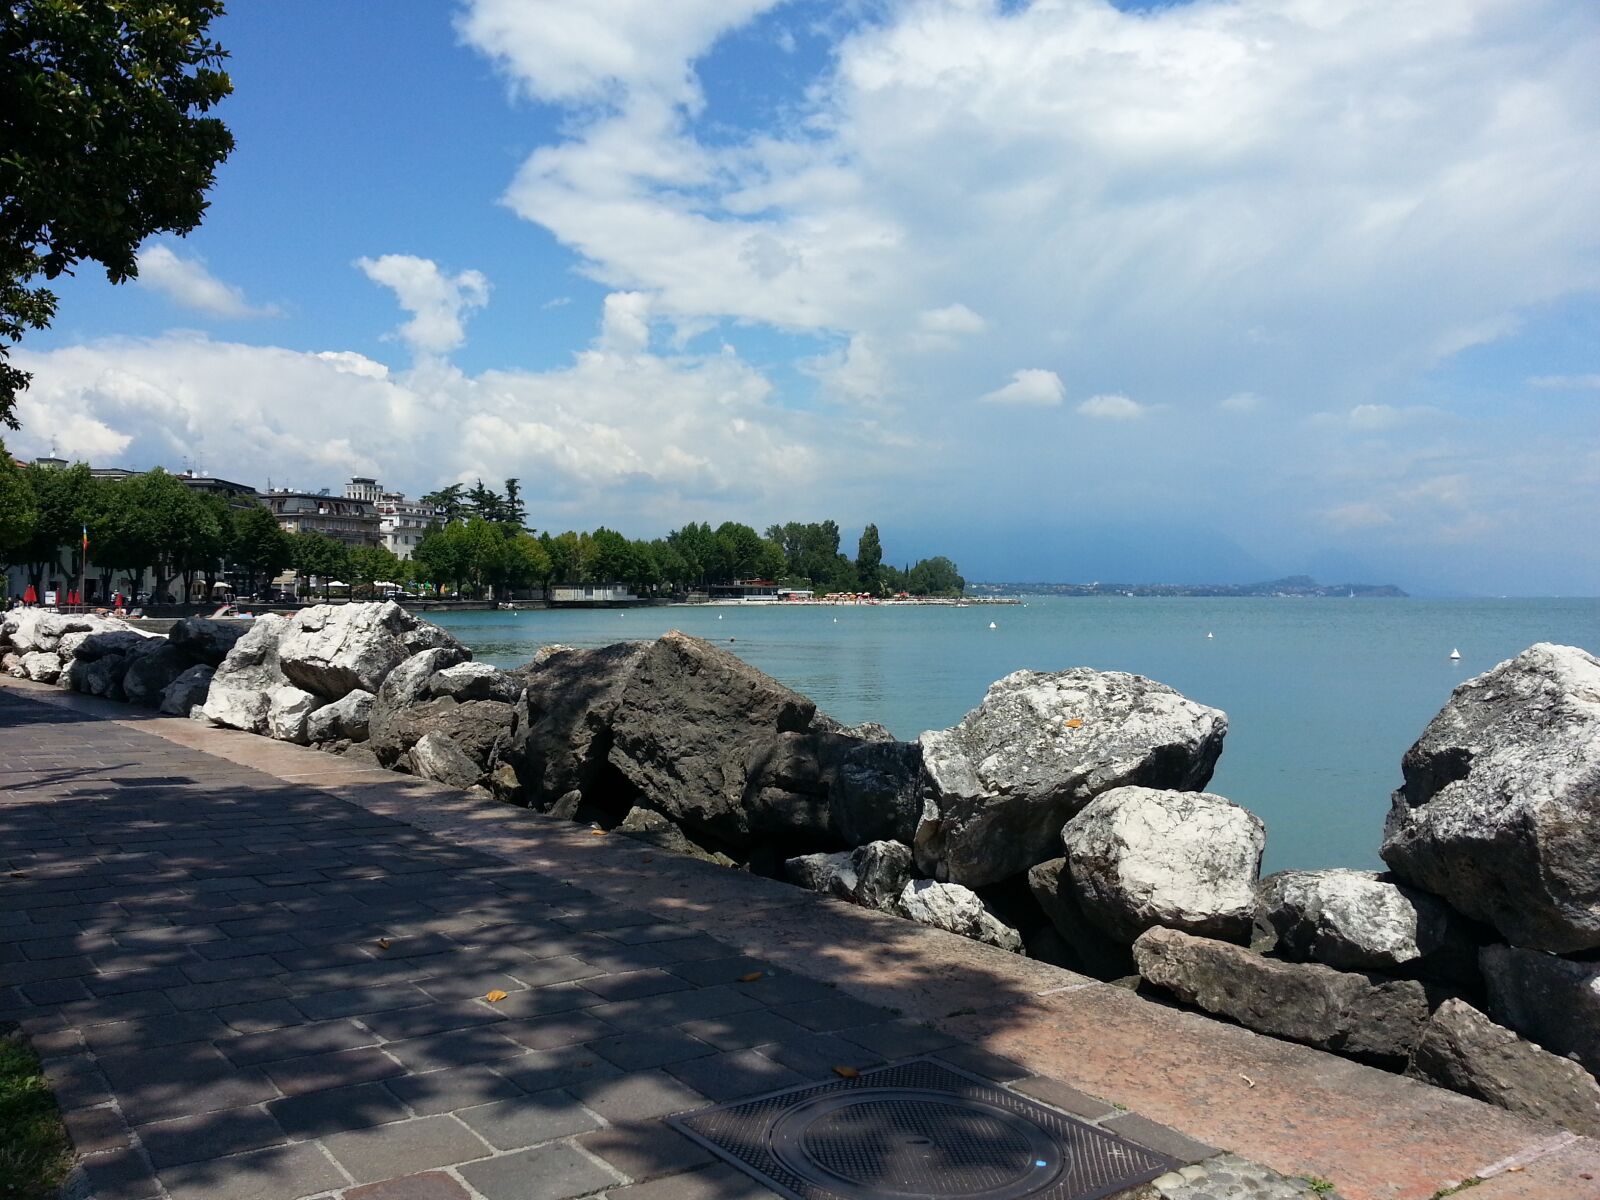 Samsung Galaxy S3 sample photo. Garda, lake, sky photography